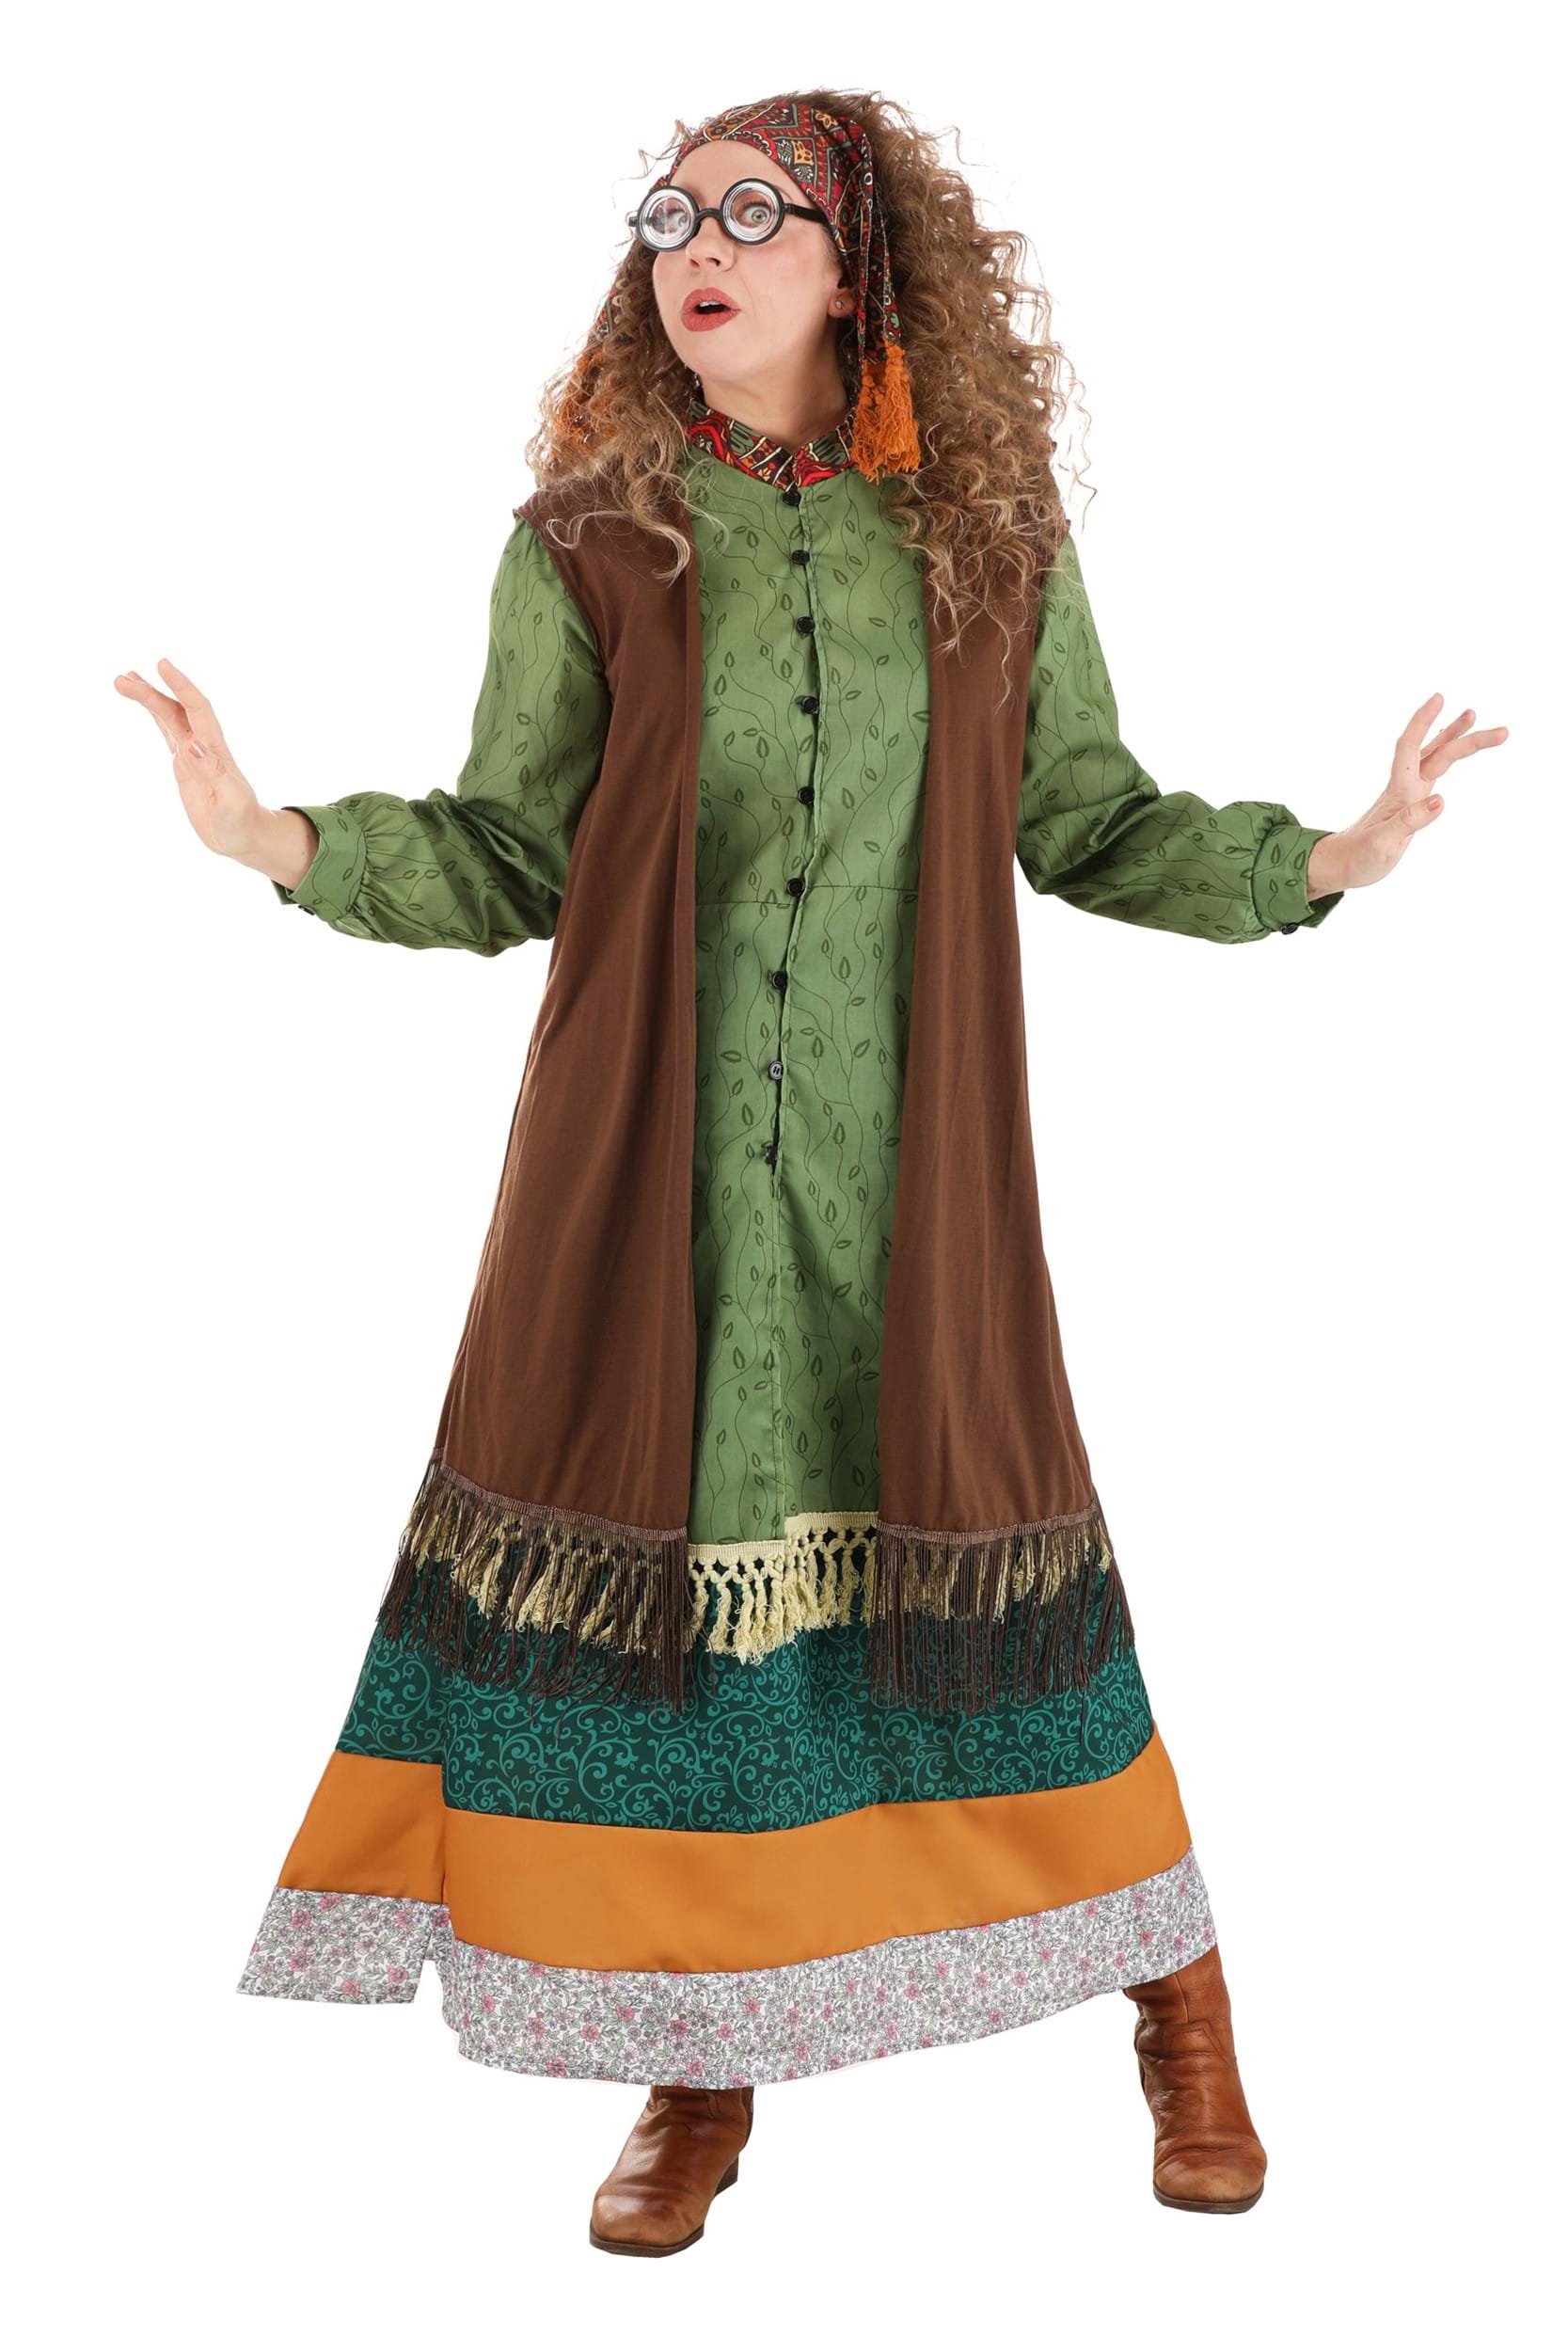 Image of Harry Potter Deluxe Plus Size Women's Professor Trelawney Costume ID JLJLF1060PL-3X